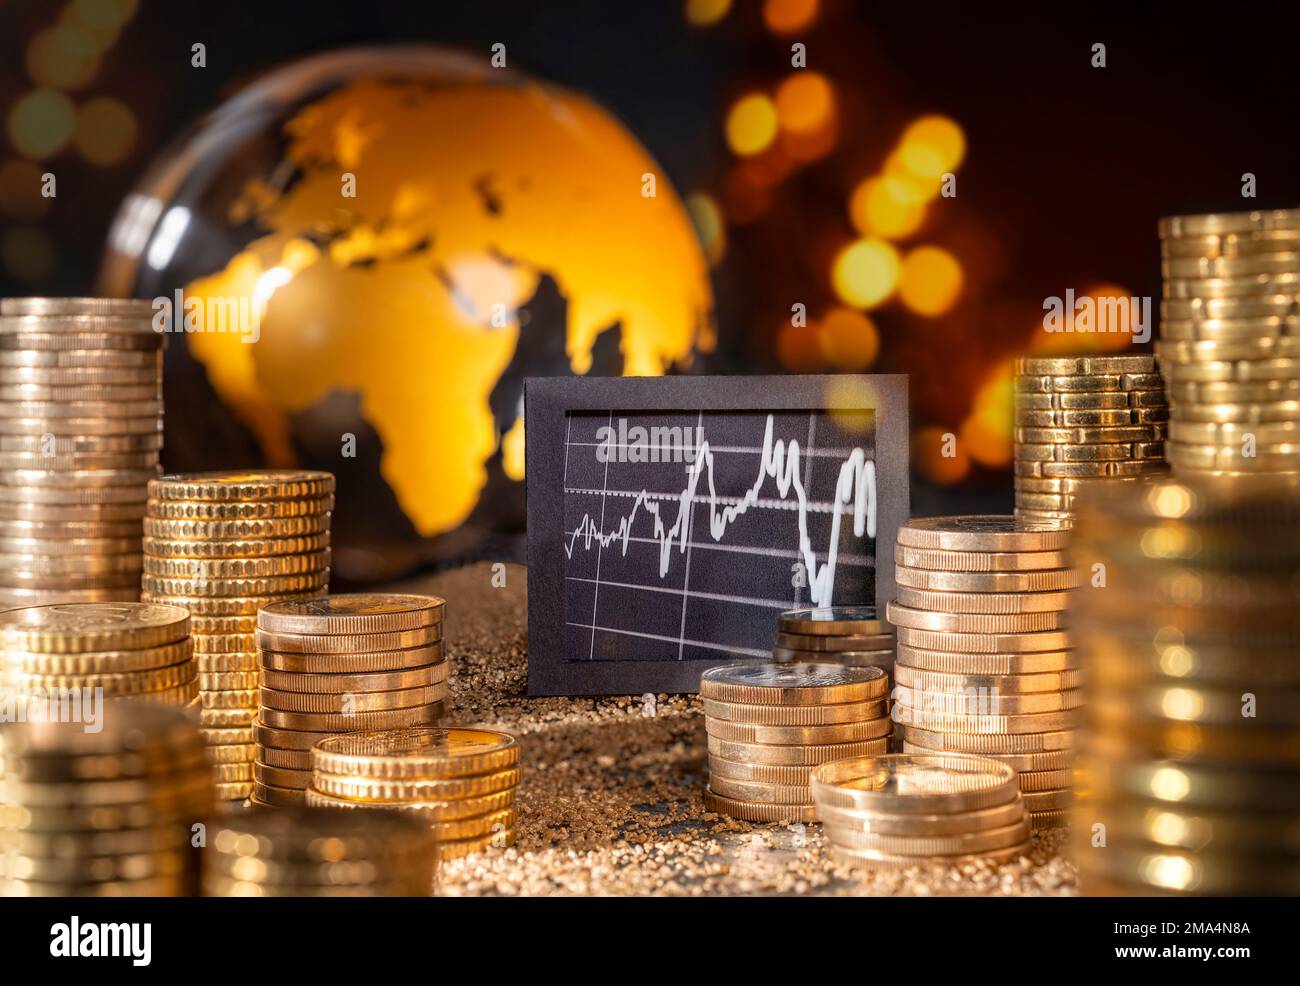 Börse und Wirtschaft international. Grafik und Geld vor dem goldenen Globus. Stockfoto